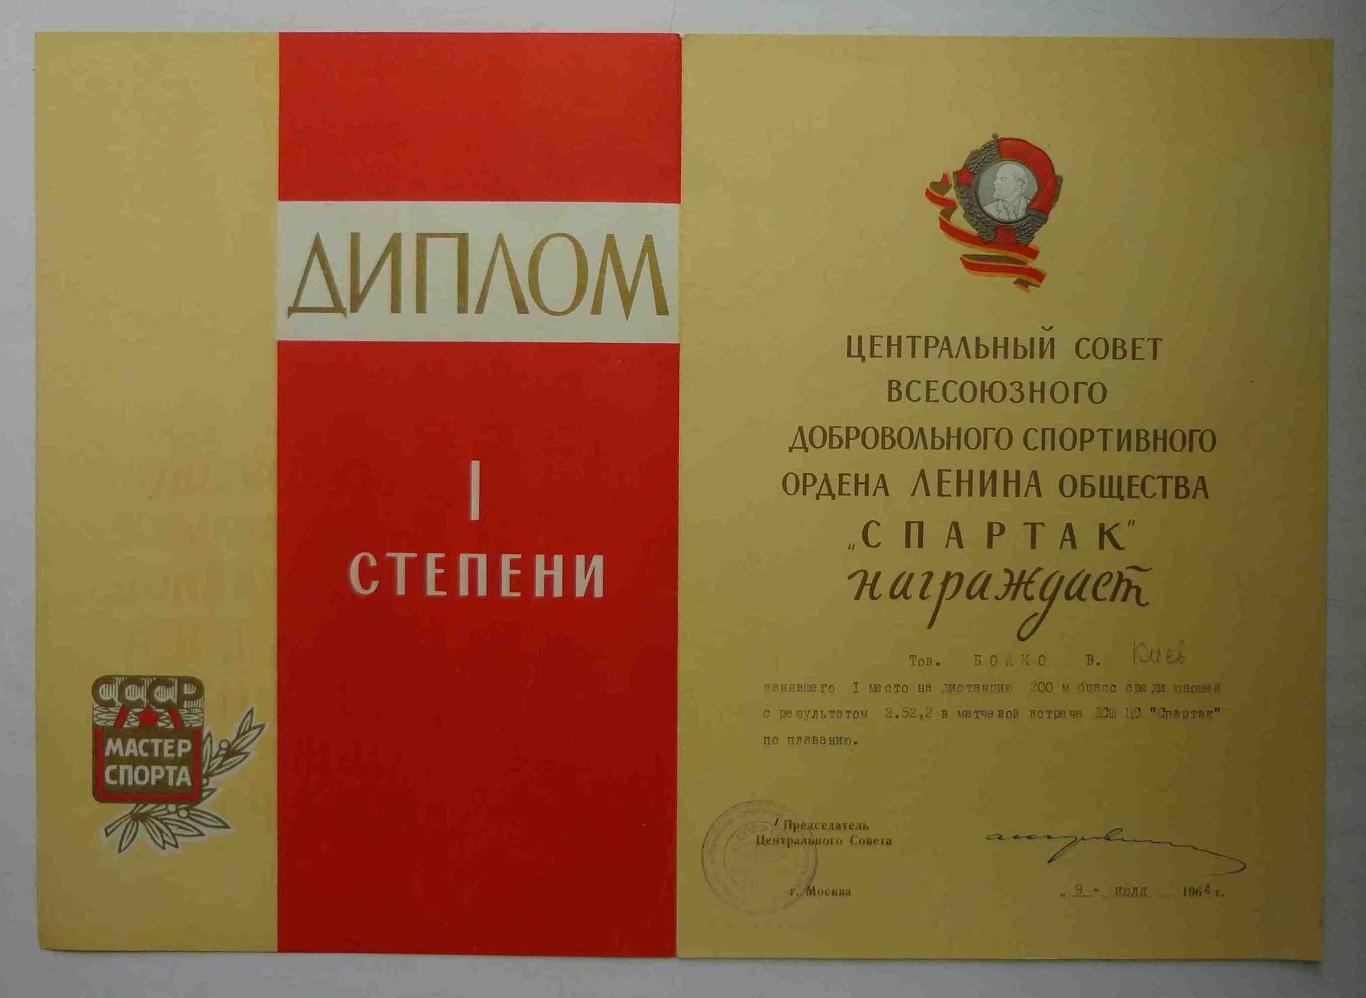 Диплом 1 степени ЦС ВДСО Спартак 1964 плавание (11)